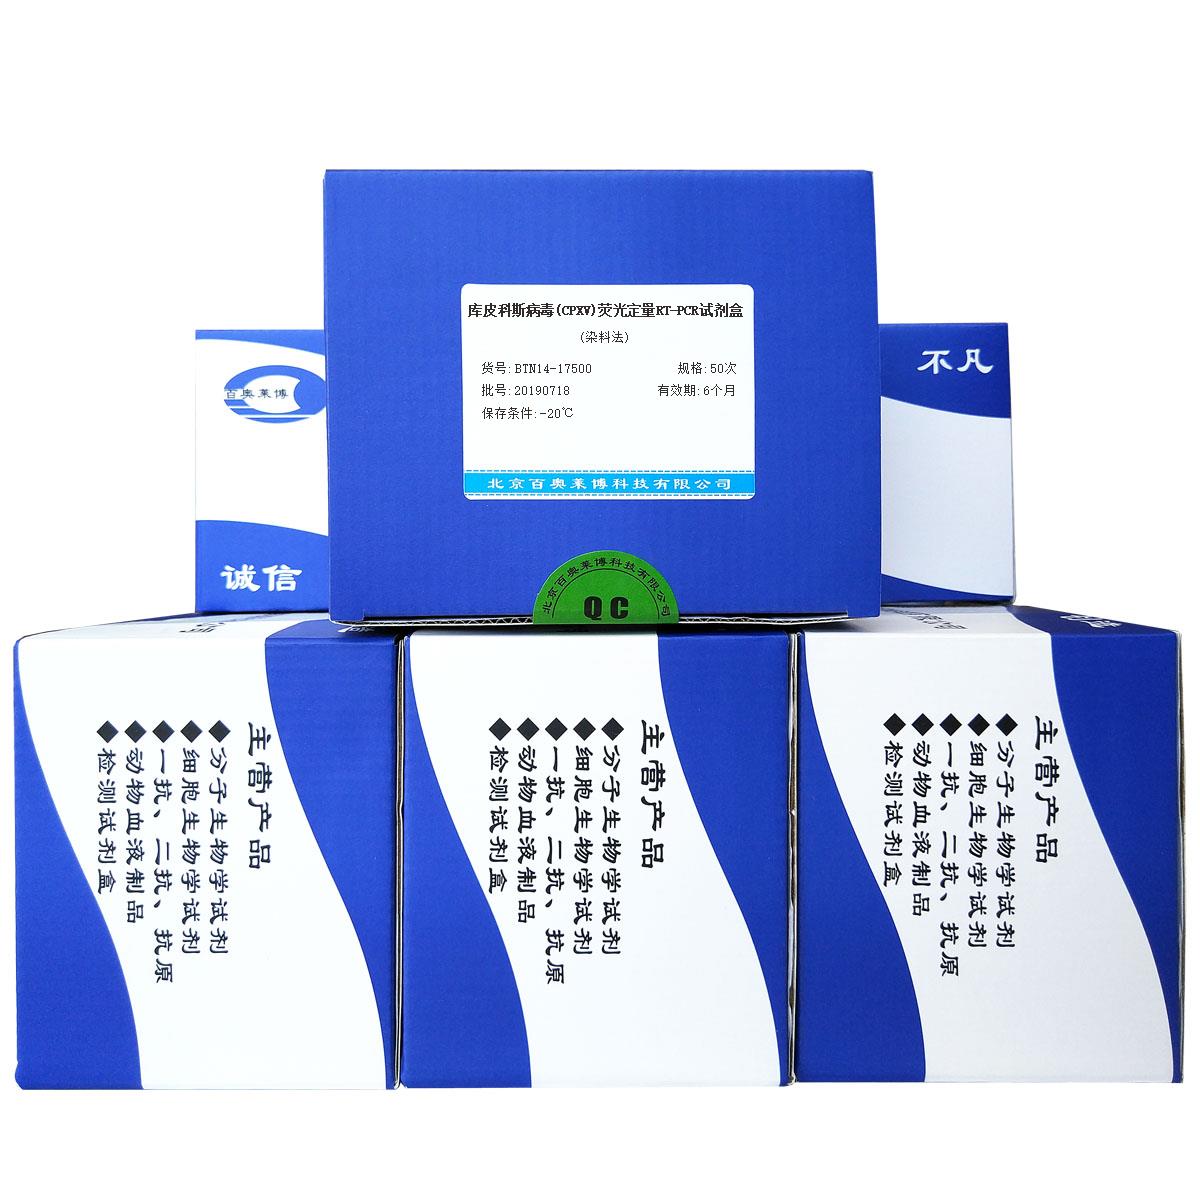 库皮科斯病毒(CPXV)荧光定量RT-PCR试剂盒(染料法)